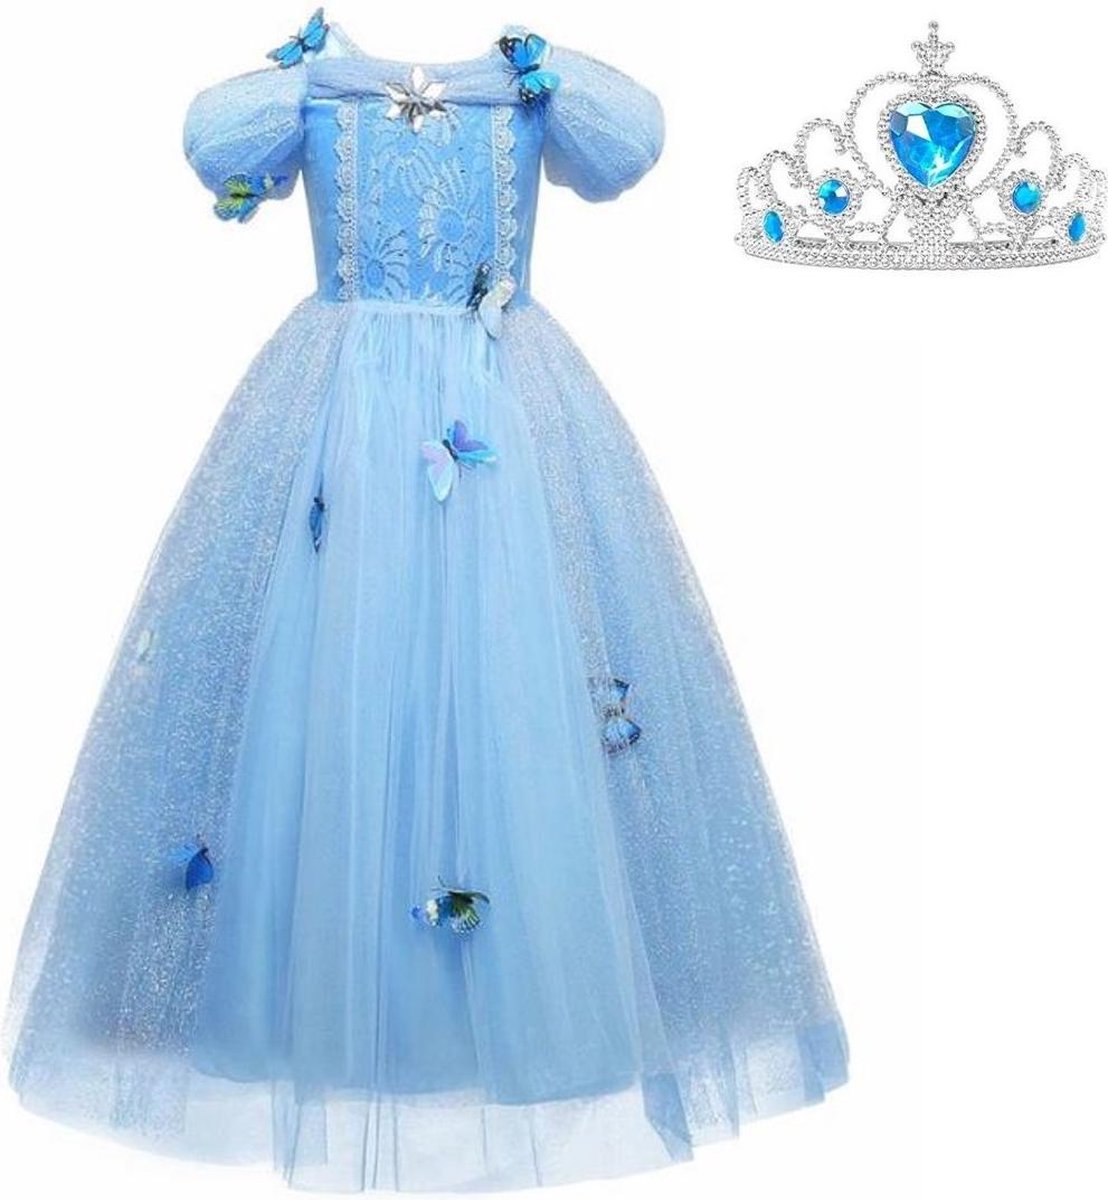 Assepoester jurk Prinsessen jurk verkleedjurk 104-110 (110) blauw Luxe met vlinders korte mouw + kroon verkleedkleding